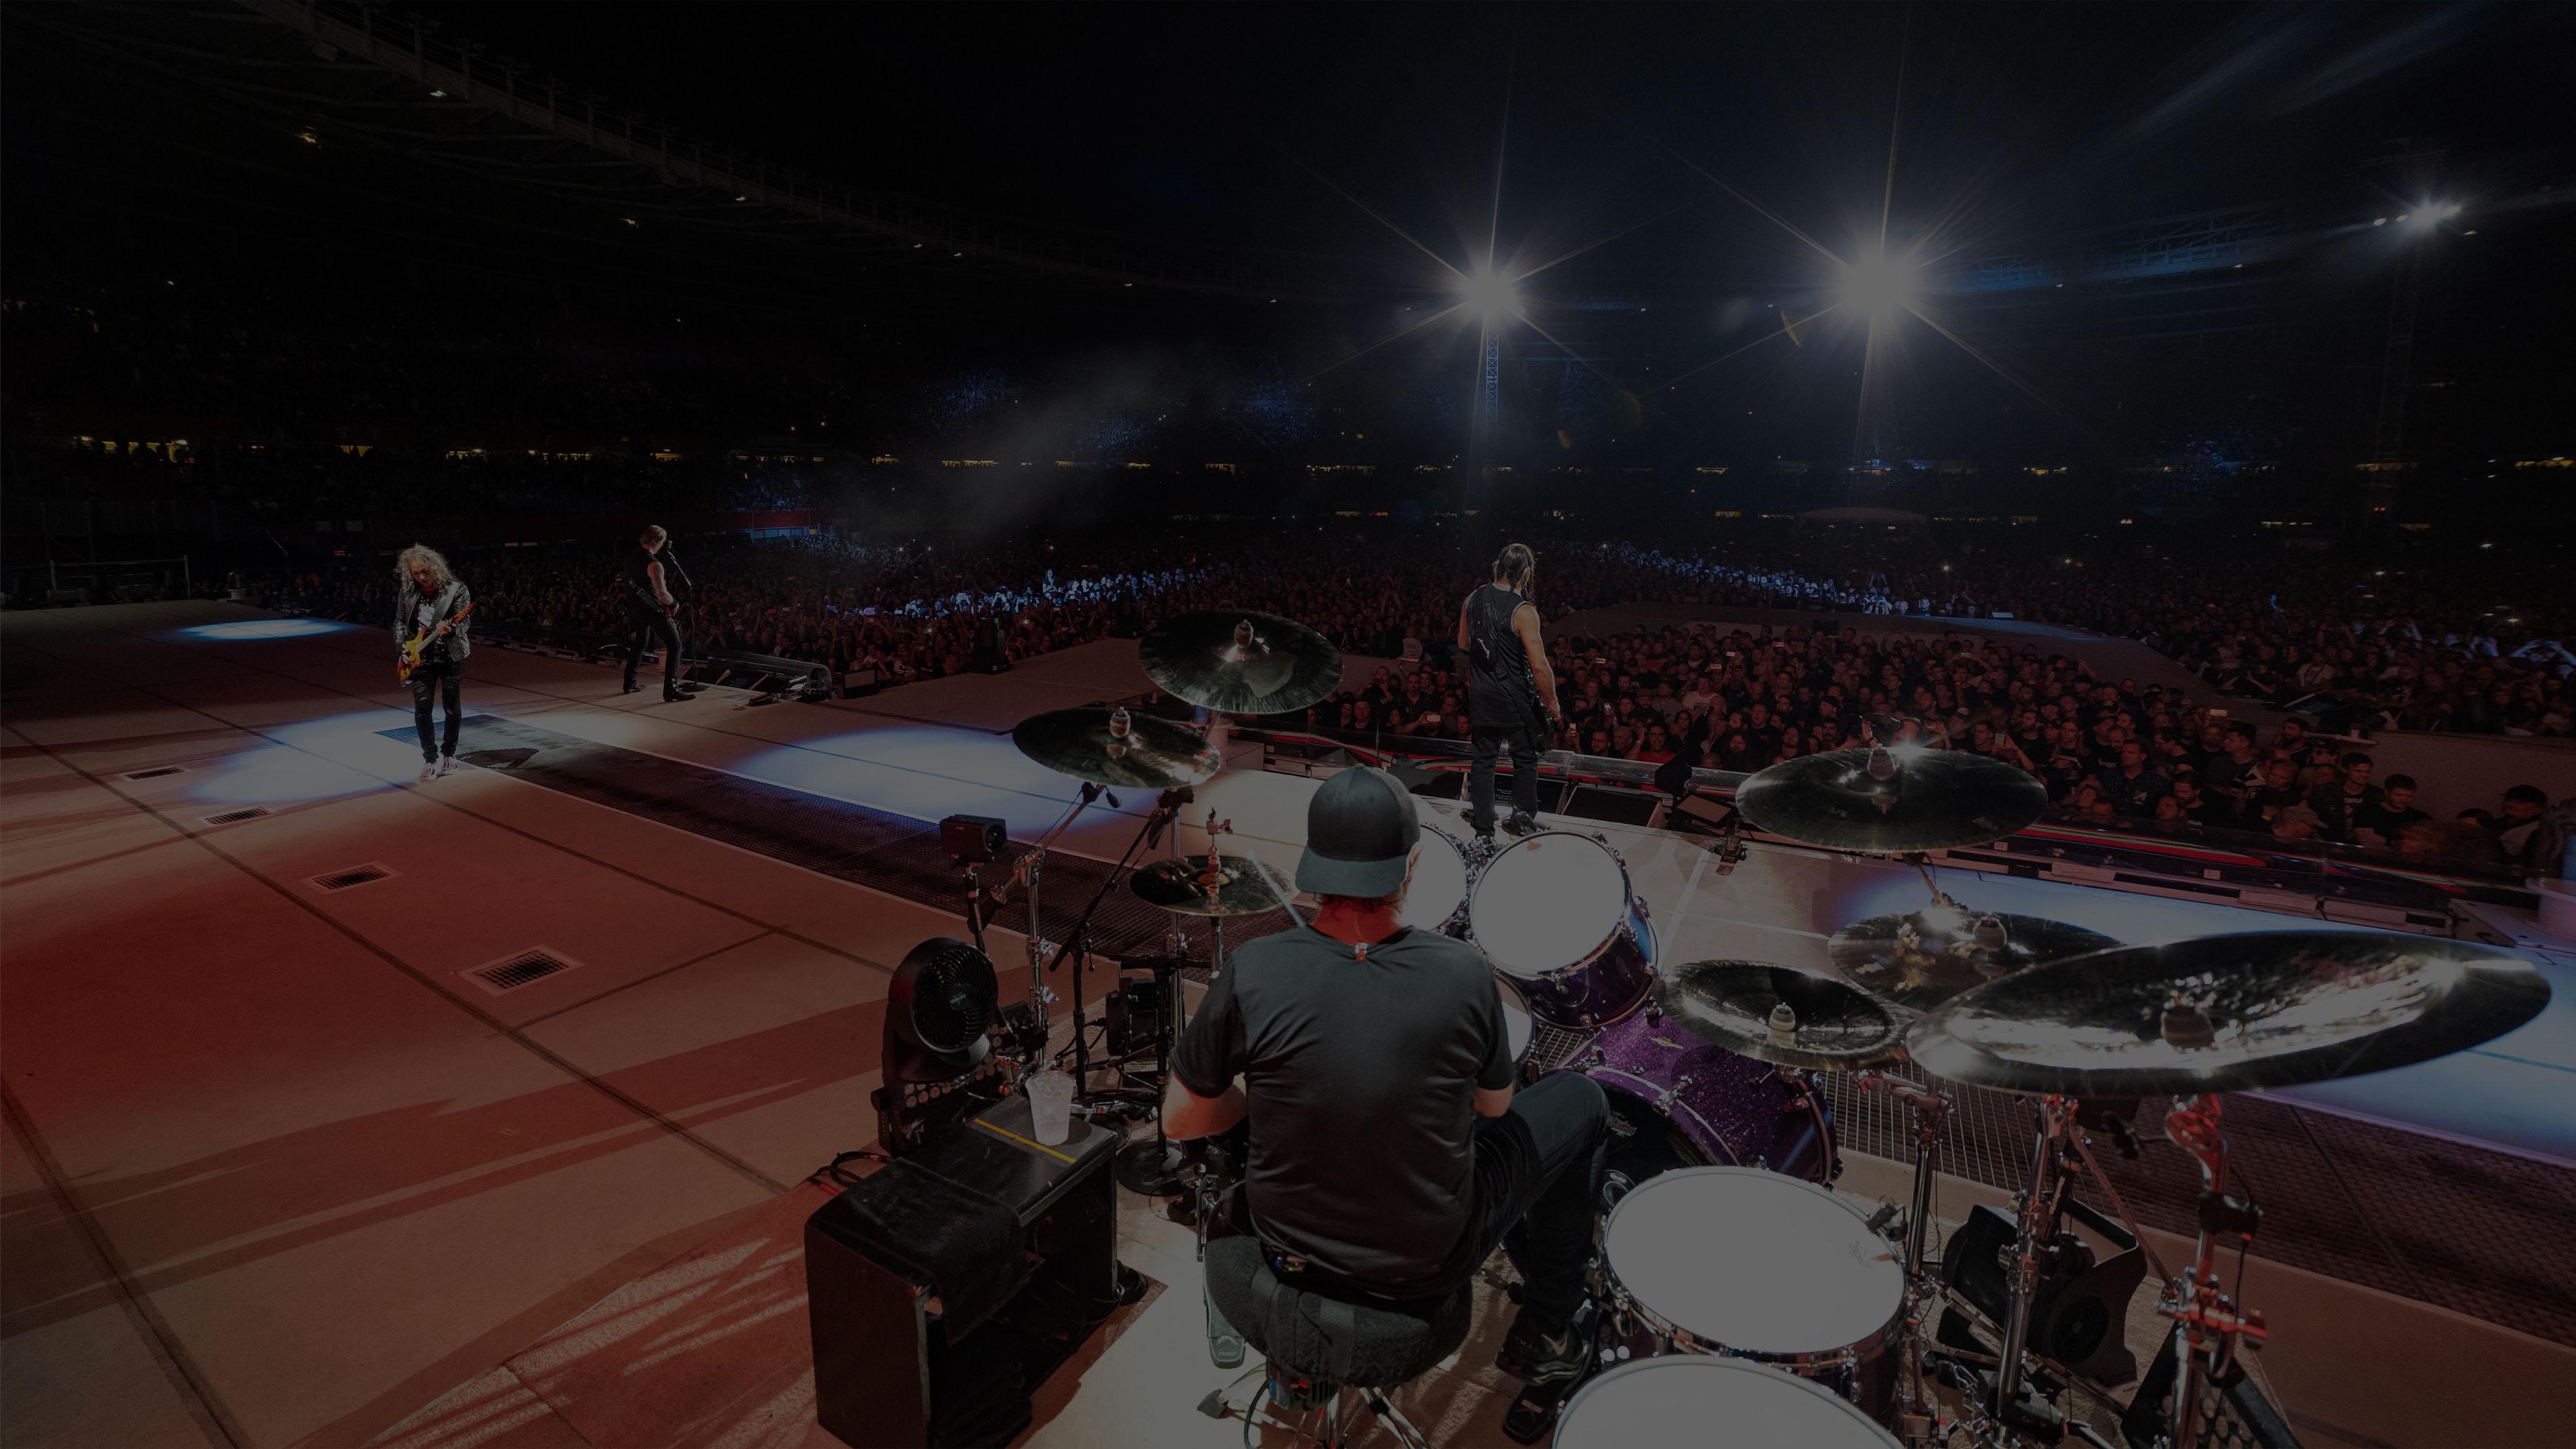 Metallica at Ernst Happel Stadion in Vienna, Austria on August 16, 2019